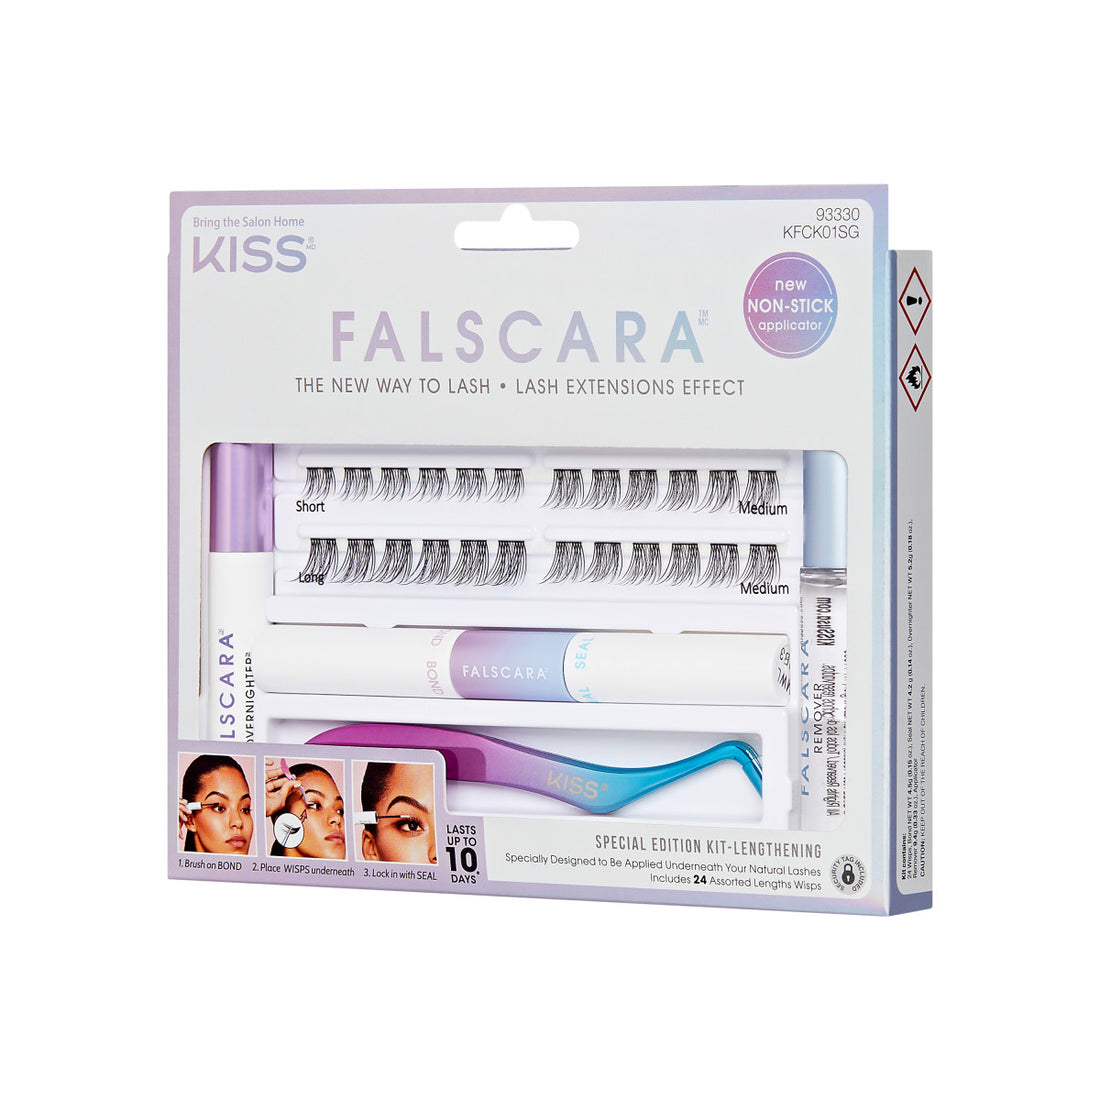 FALSCARA Starter Kit - Lengthening Wisps